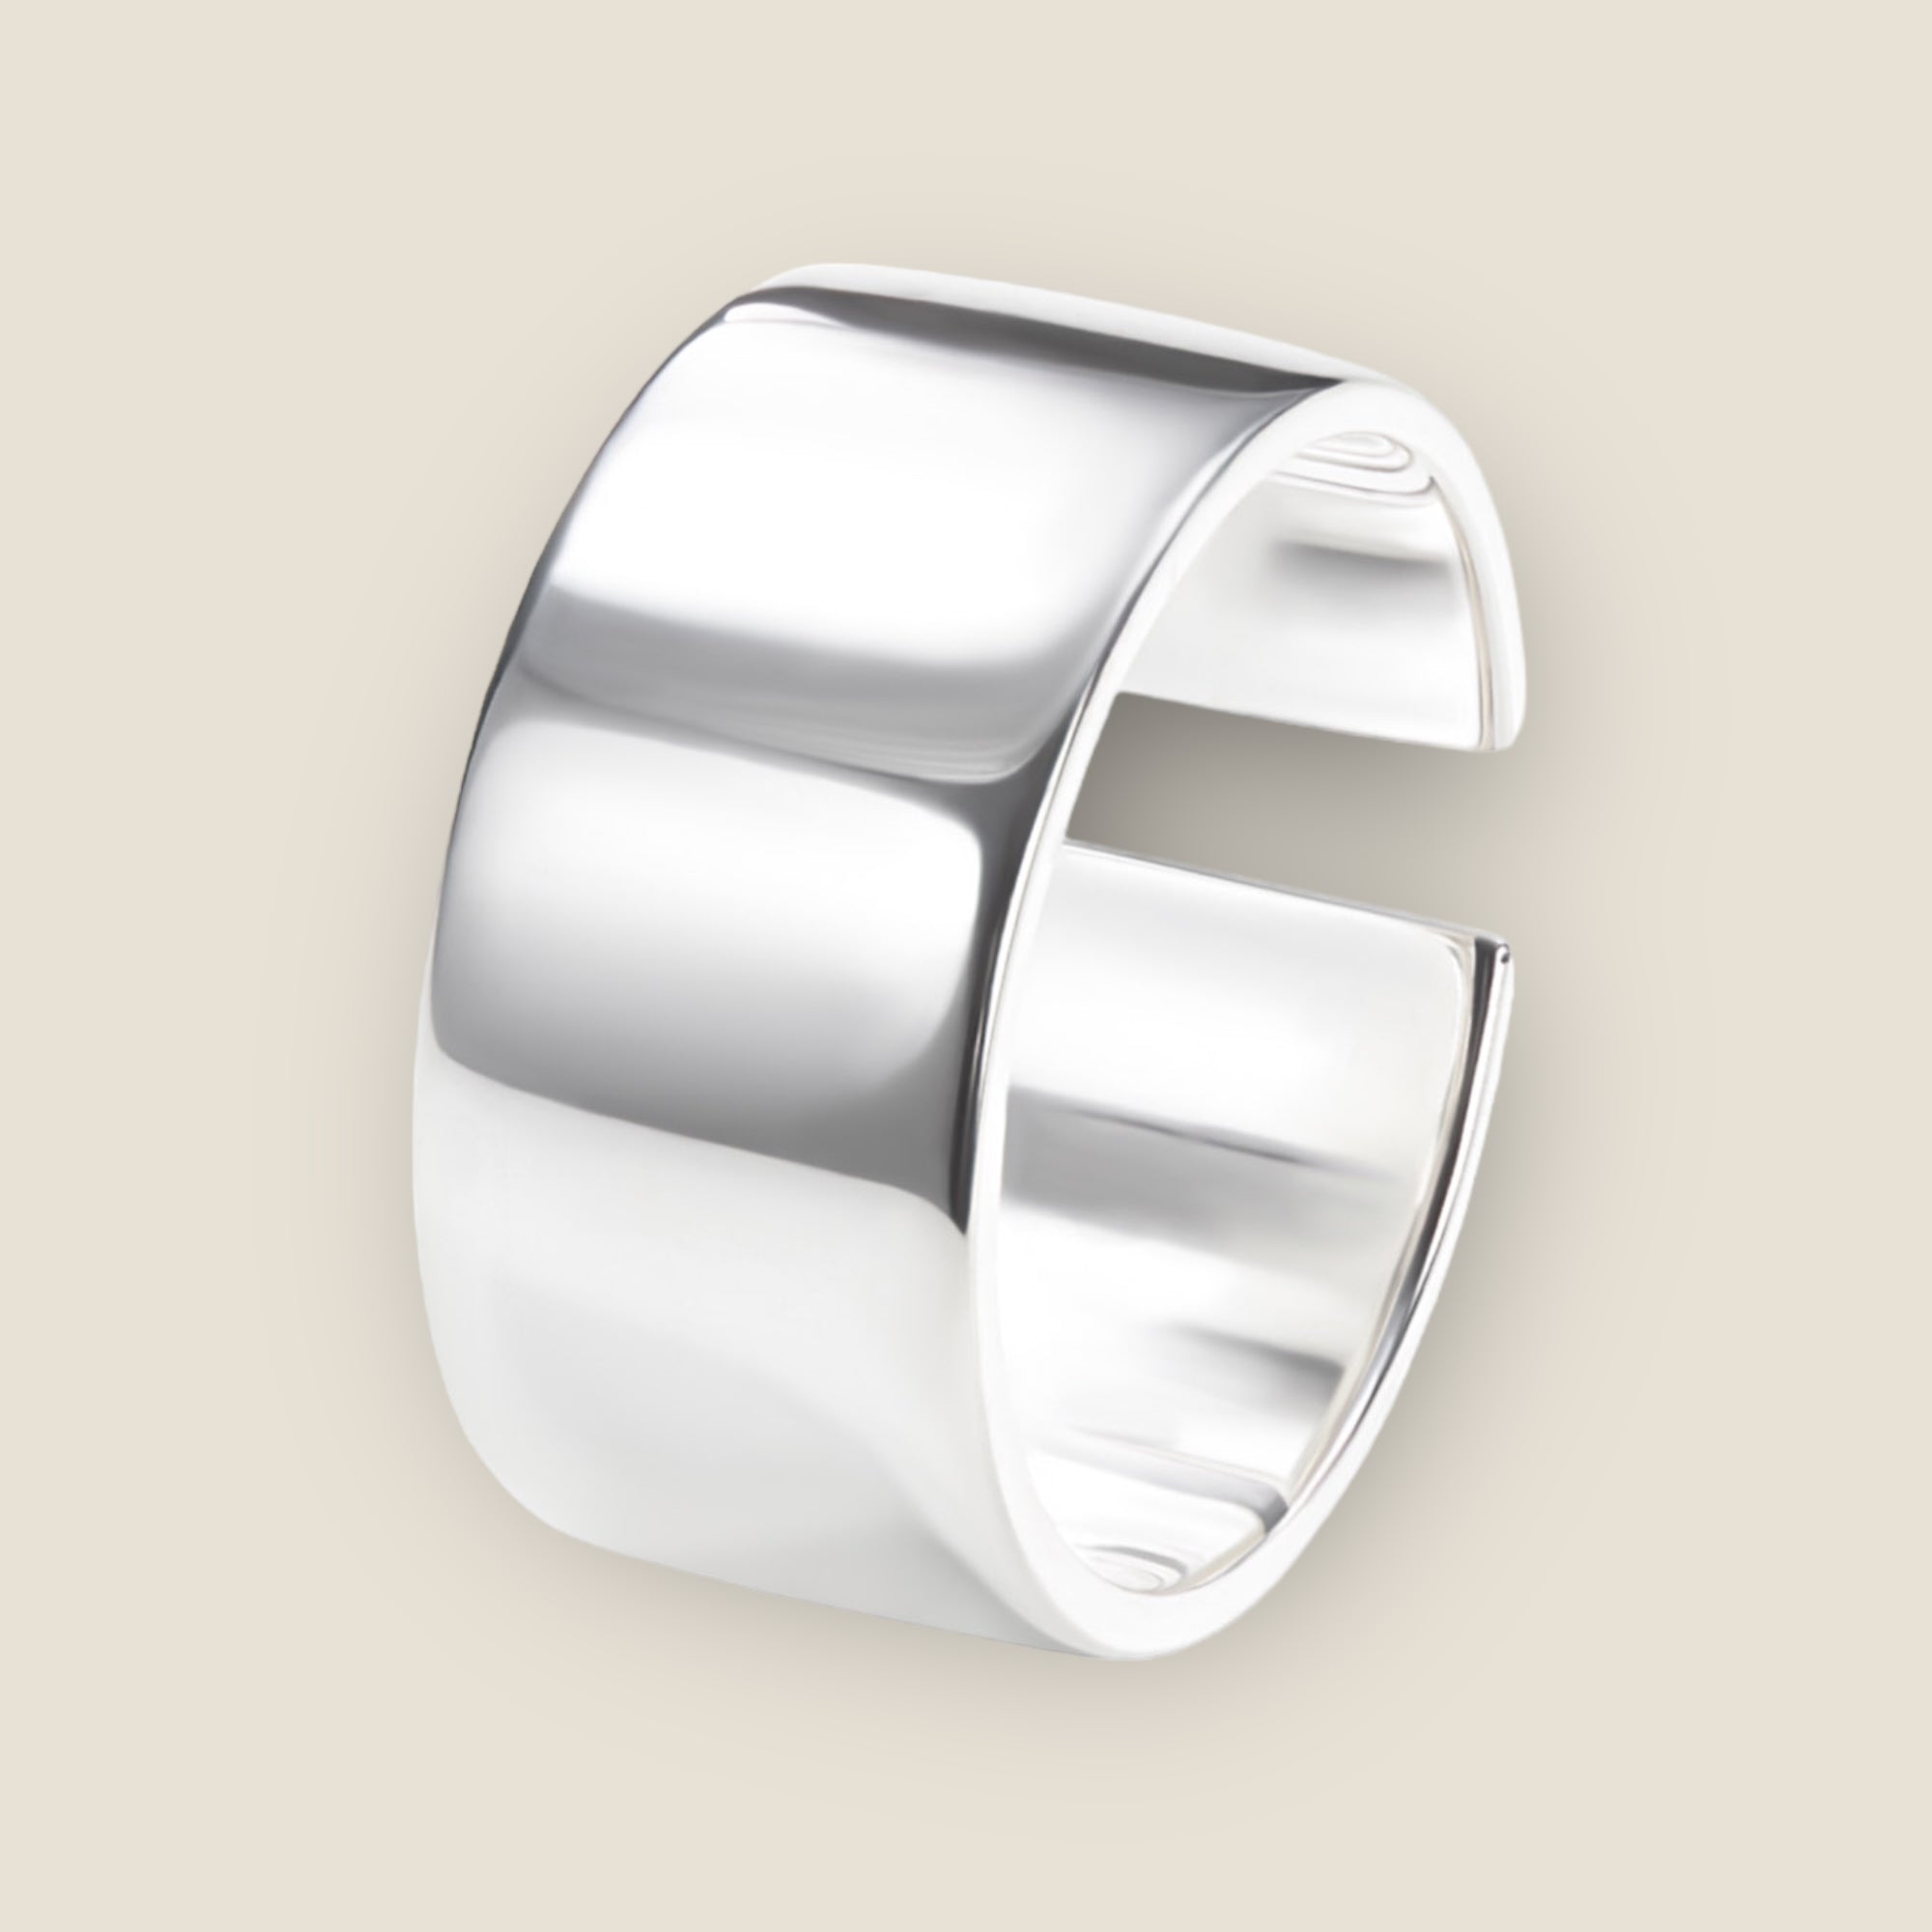 Ein verstellbarer Basic Ring aus hochwertigem 925 Sterling Silber mit geschwungenem klassischem Design, entworfen in Zusammenarbeit mit der renommierten Schmuckwerkstatt 'Vielring'. Dieser Ring bietet zeitlose Eleganz und Anpassbarkeit, perfekt für jeden Anlass. Maße: ~ 18,5 mm (Verstellbar - Ringgröße 51-69).